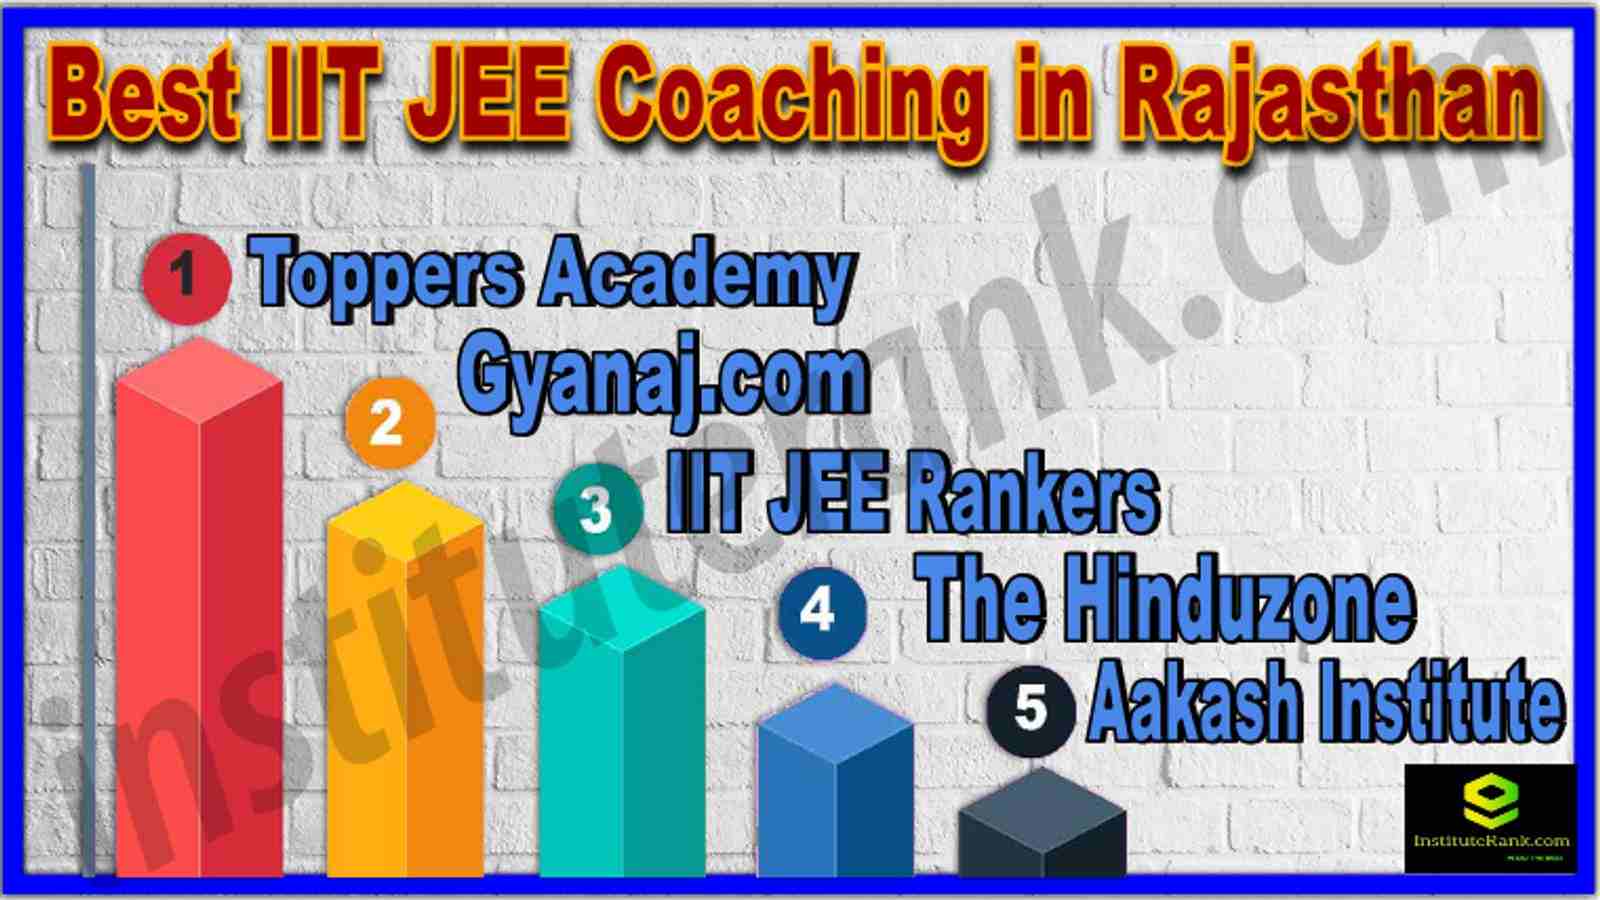 Best IIT JEE Coaching in Rajasthan